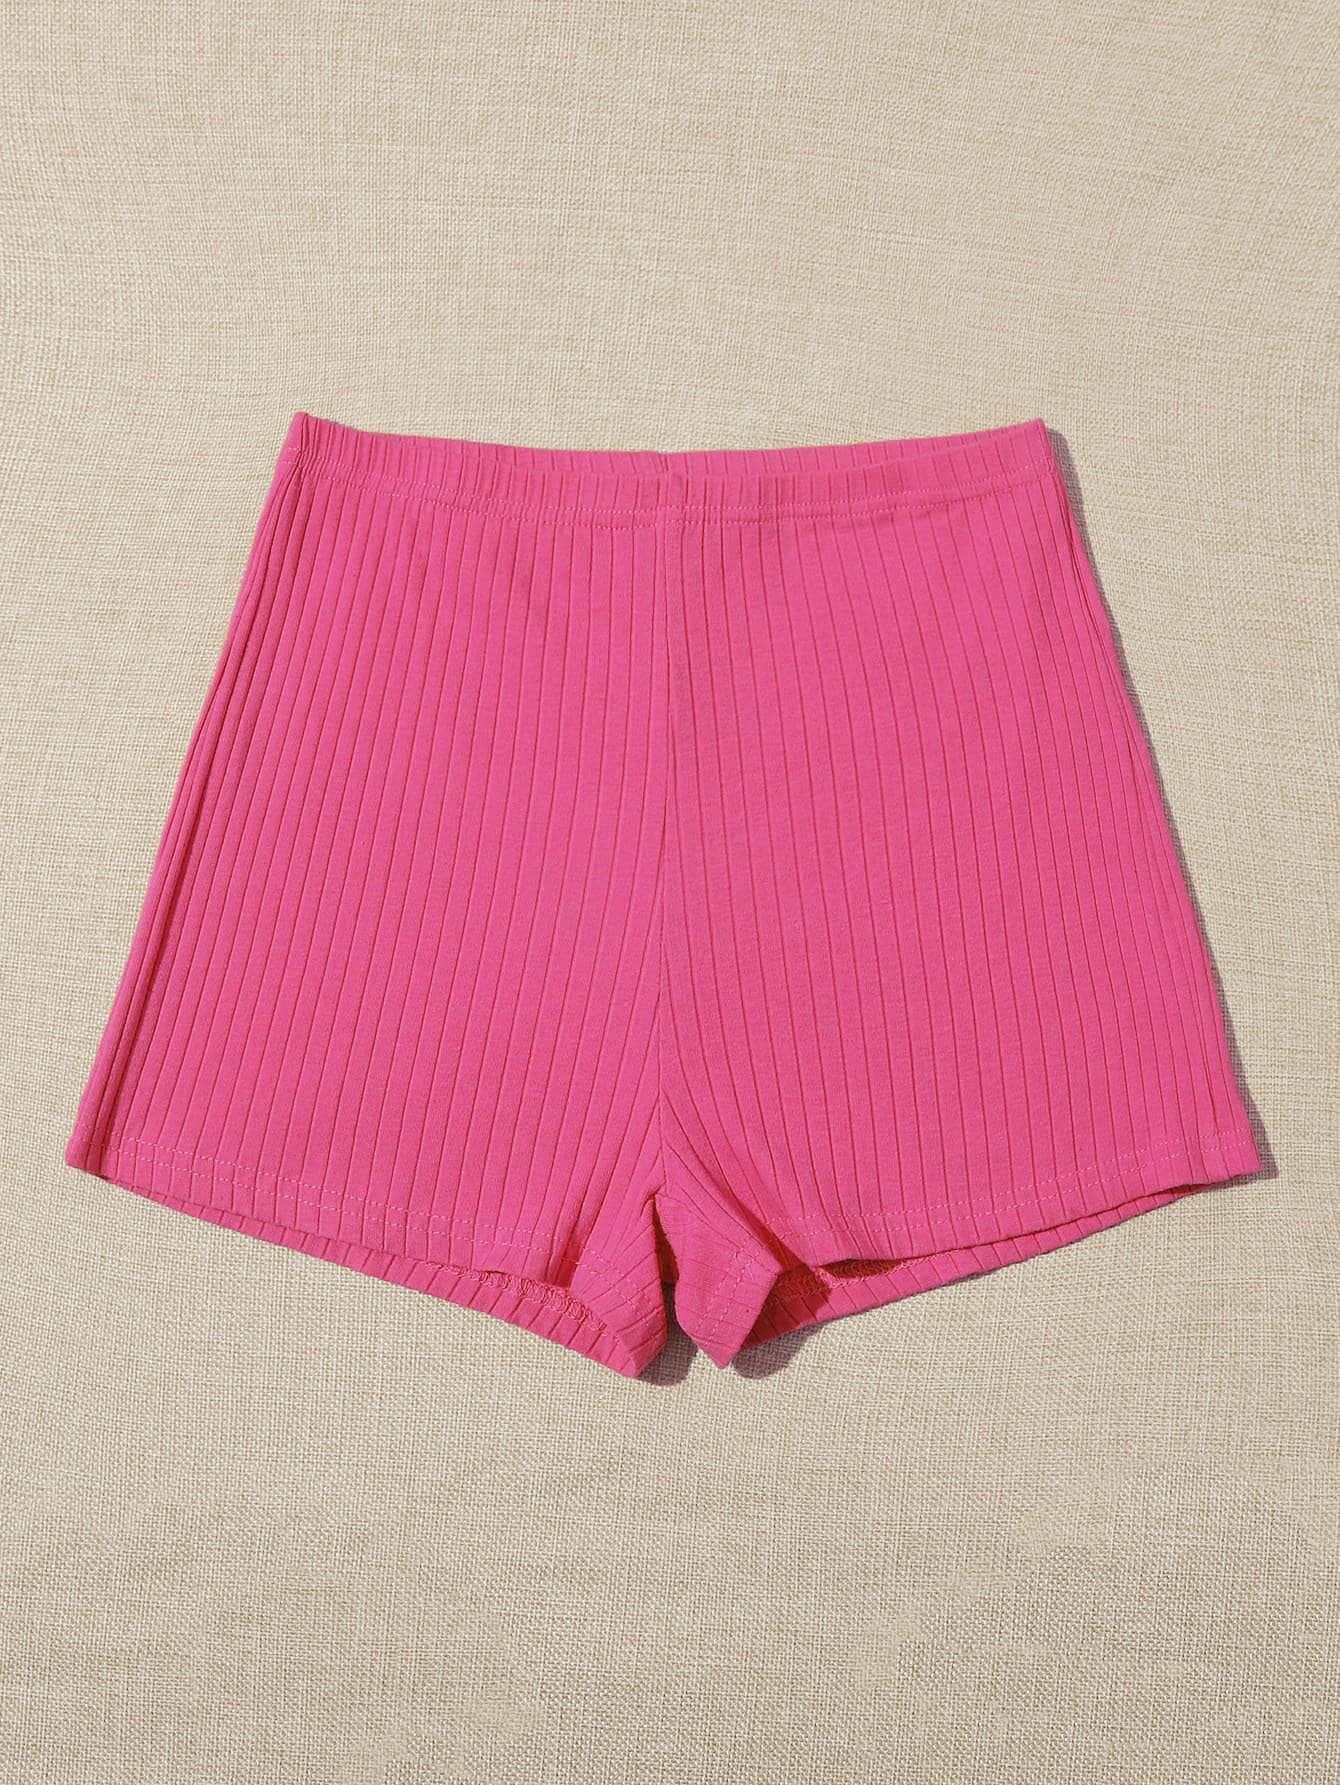 Rosa Fucsia / L Shorts tejido de canalé de cintura elástica